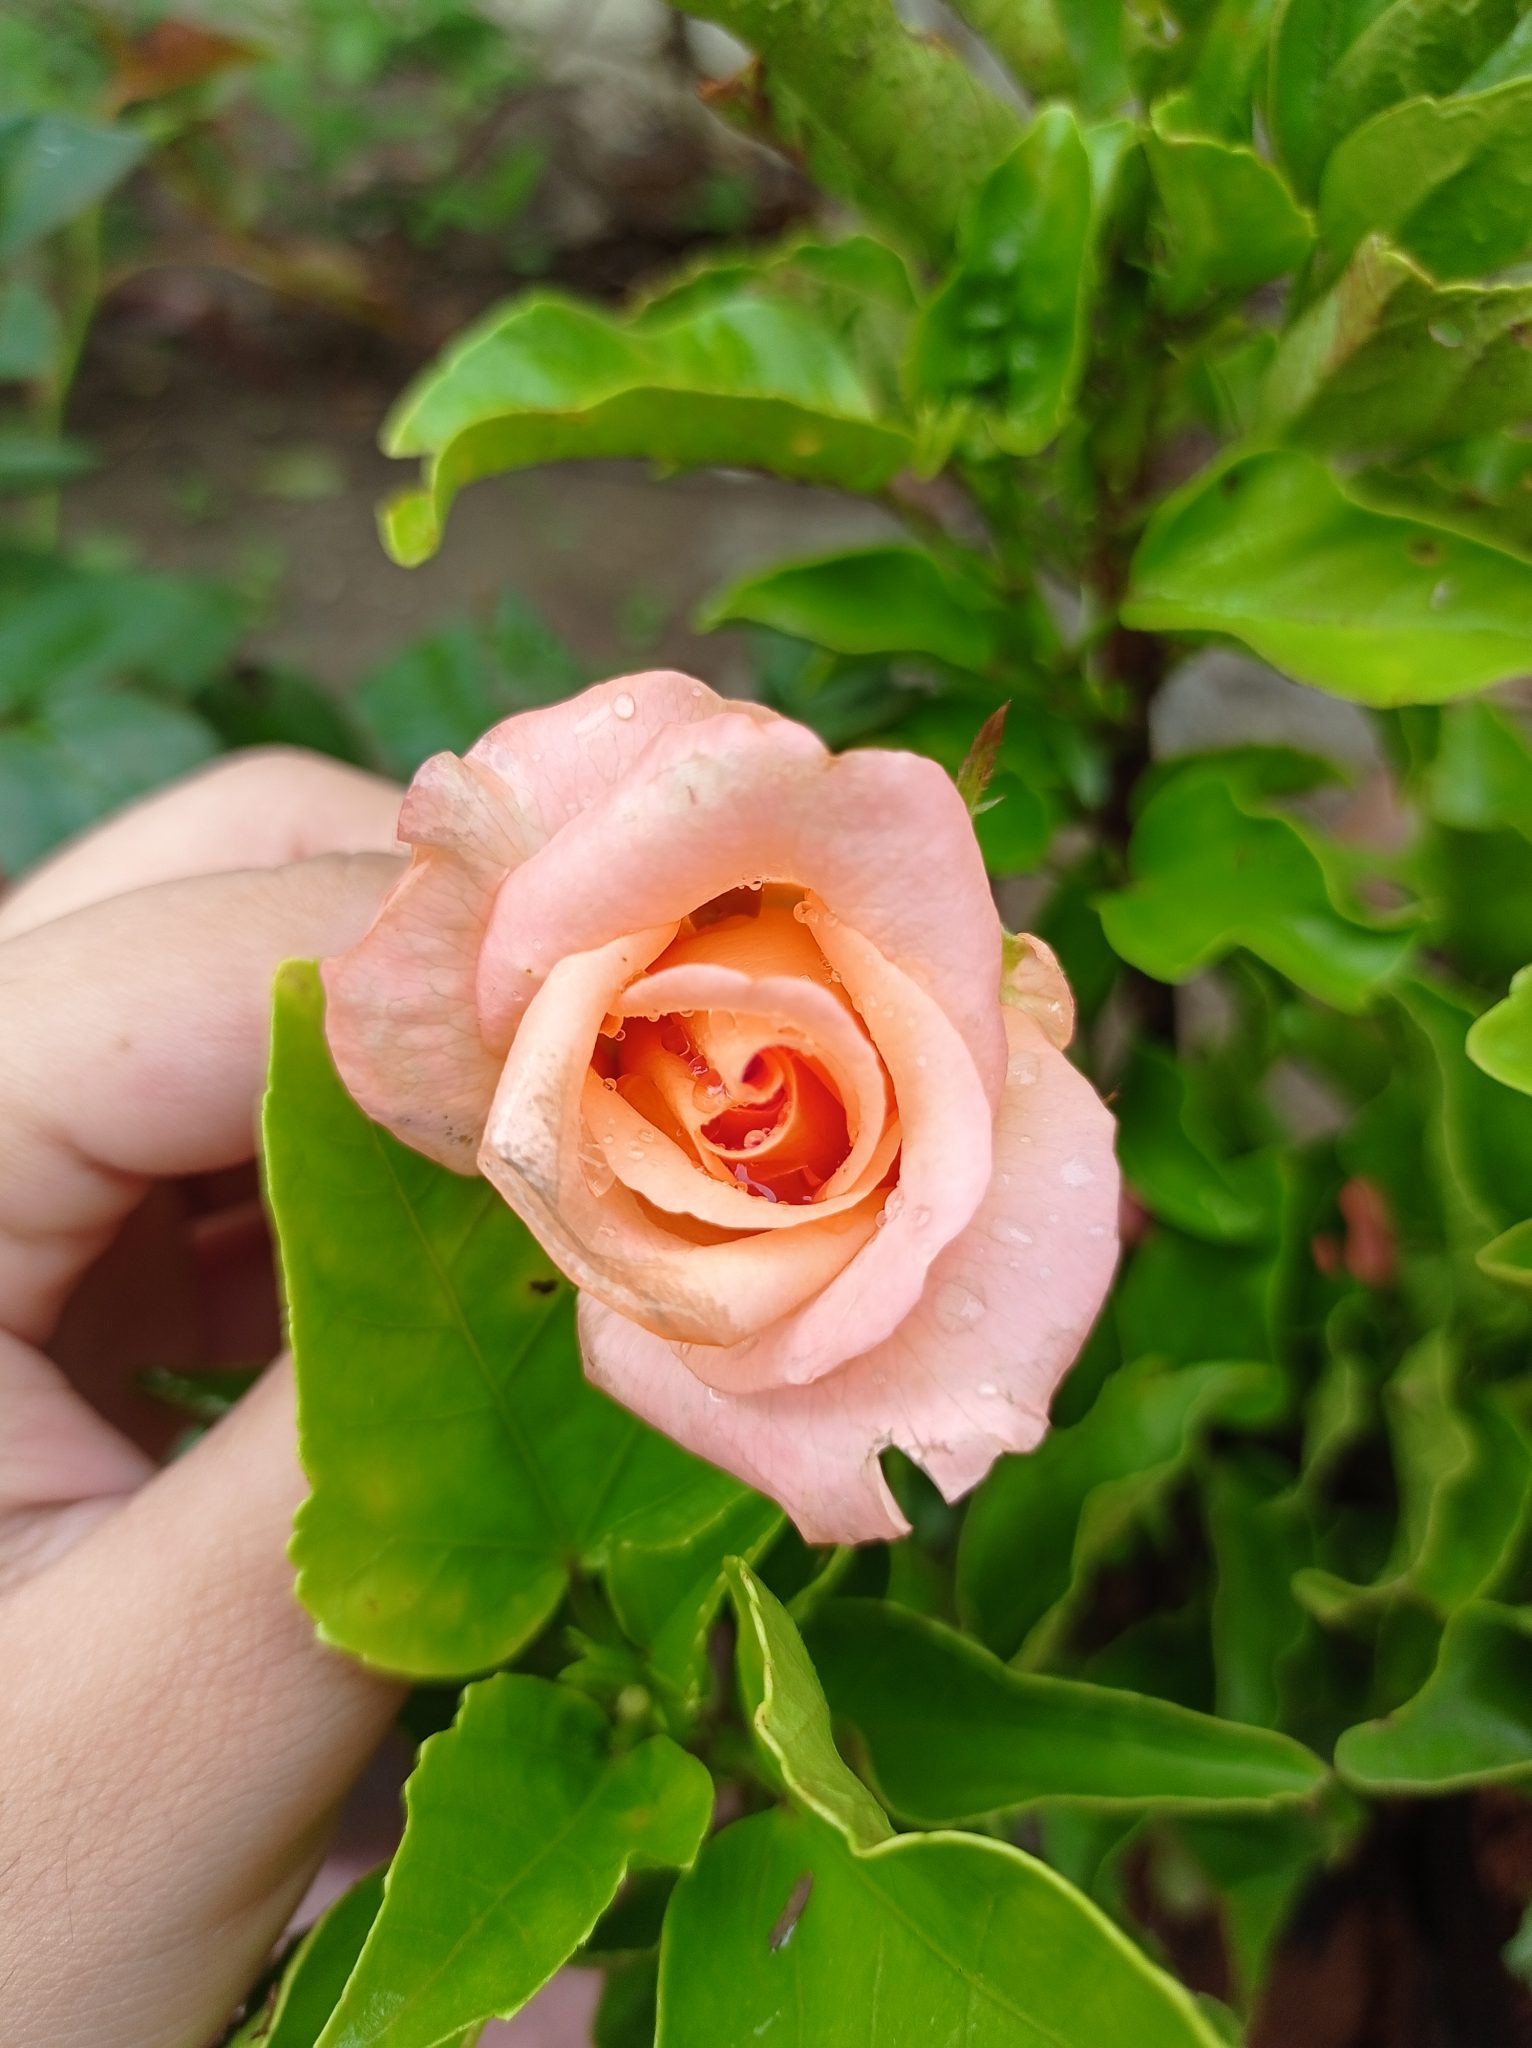 A peach-colored rose